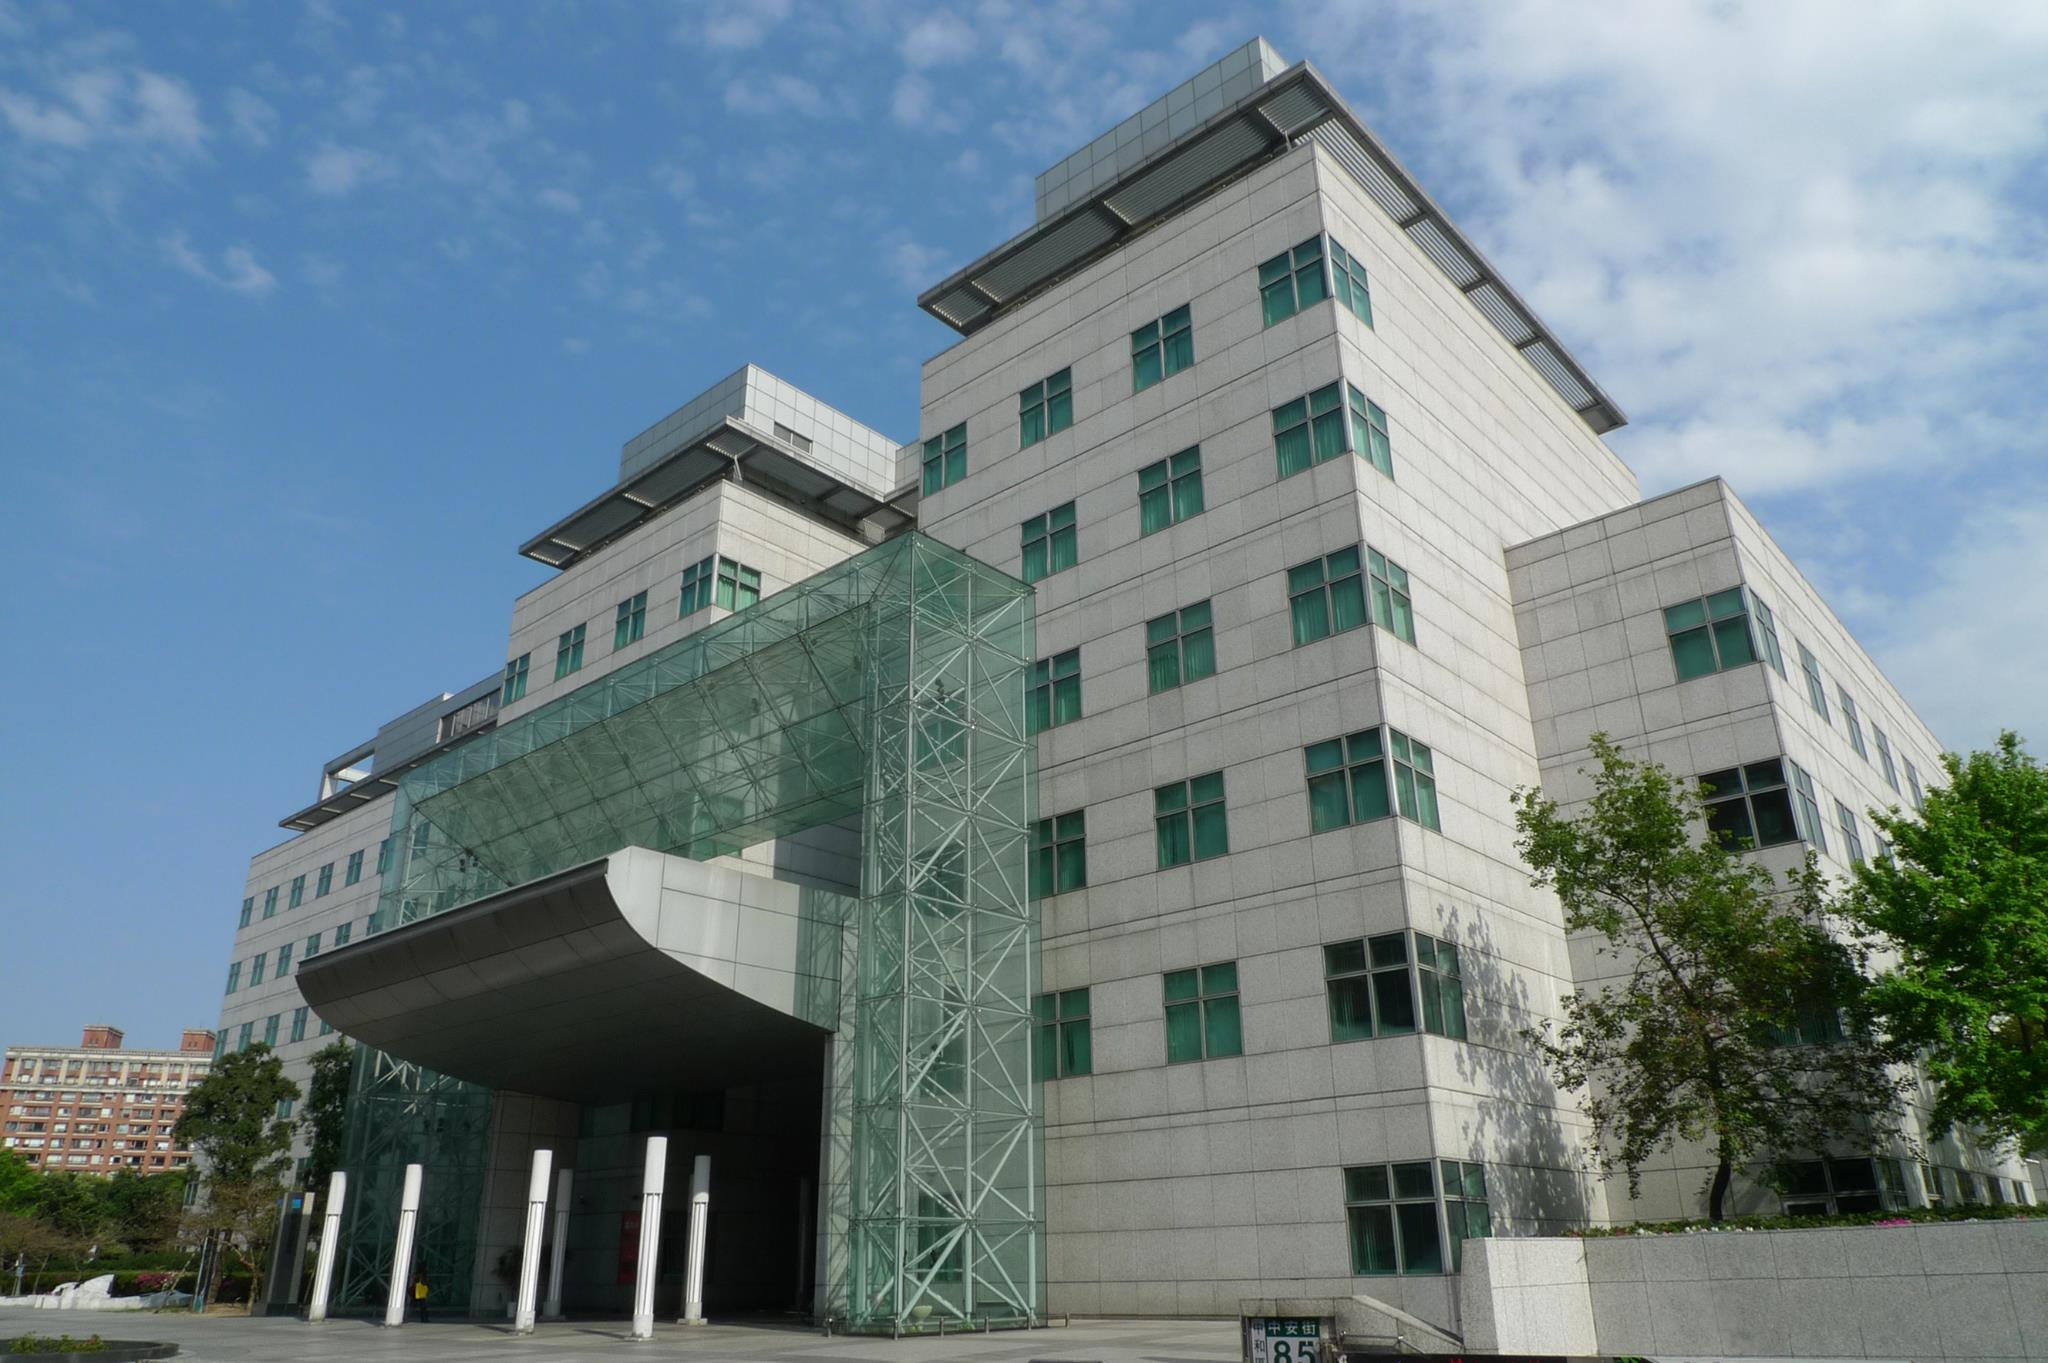 國立臺灣圖書館